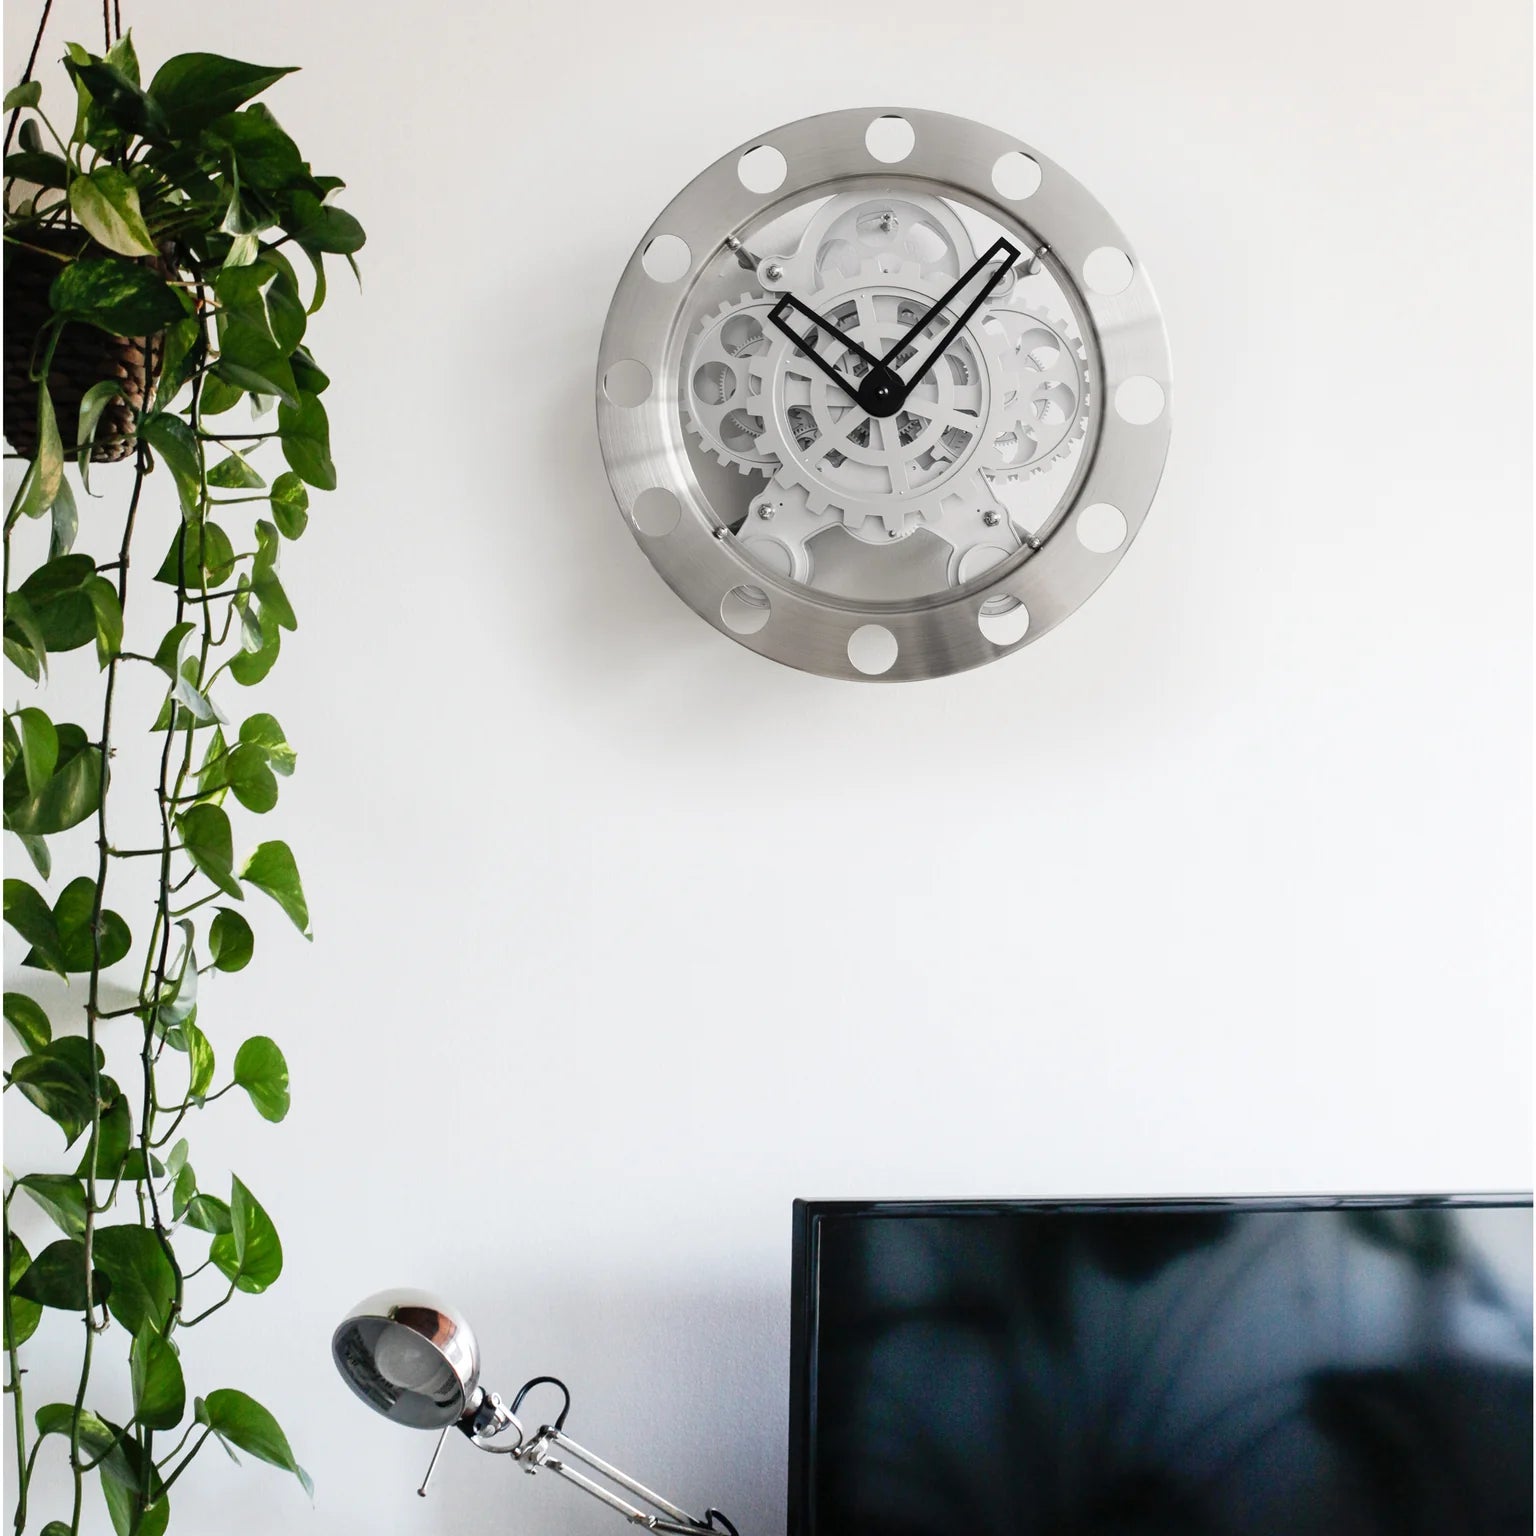 Kikkerland Gear Wall Clock – Nickel/White - 14"